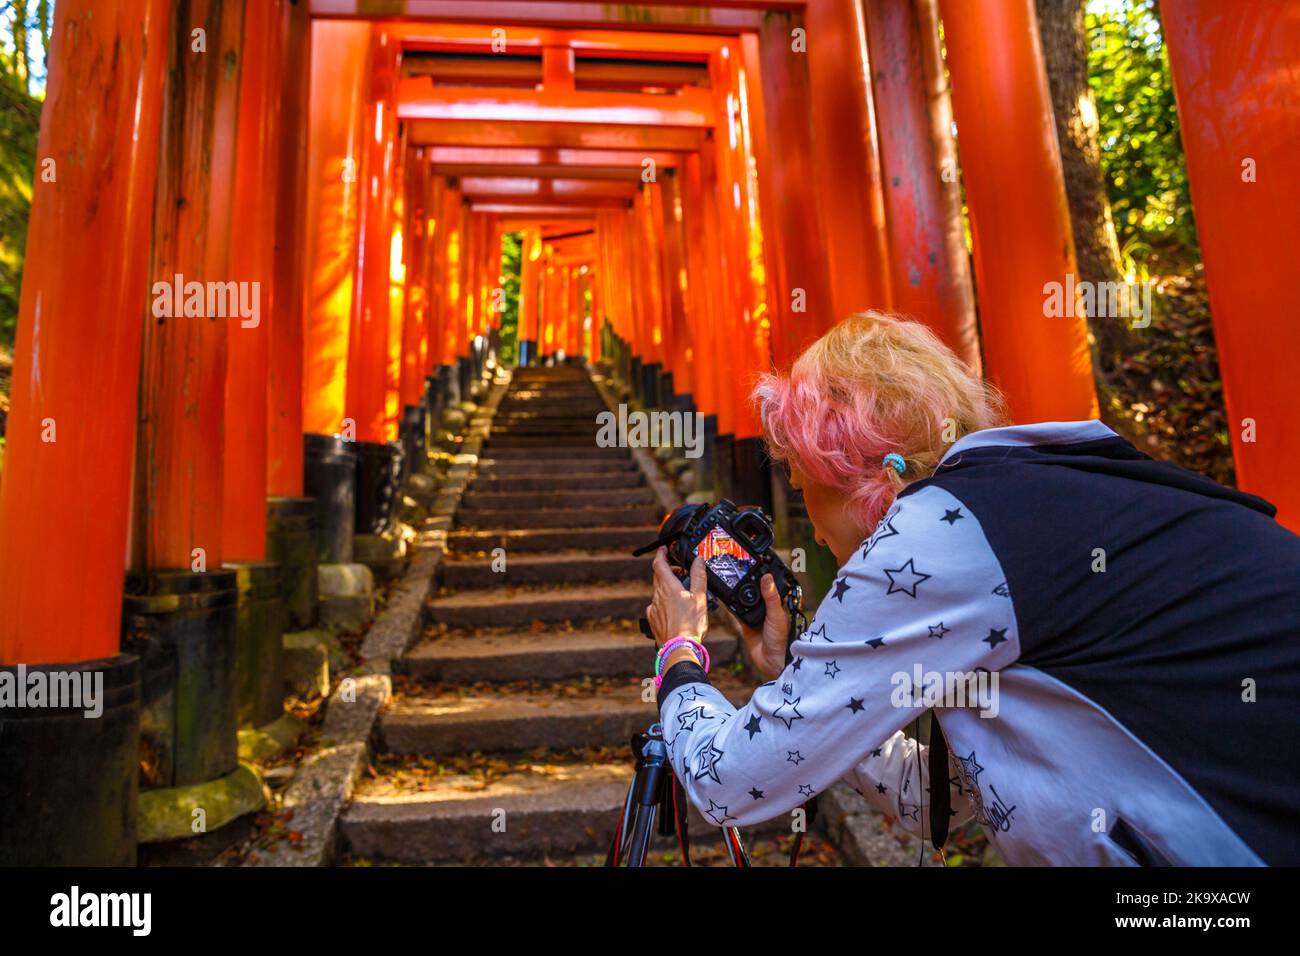 Viaggio donna fotografo con fotocamera professionale scatta foto del famoso monumento storico Fushimi Inari santuario. Concetto di viaggio in asia. Il famoso punto di riferimento di Kyoto. Foto Stock